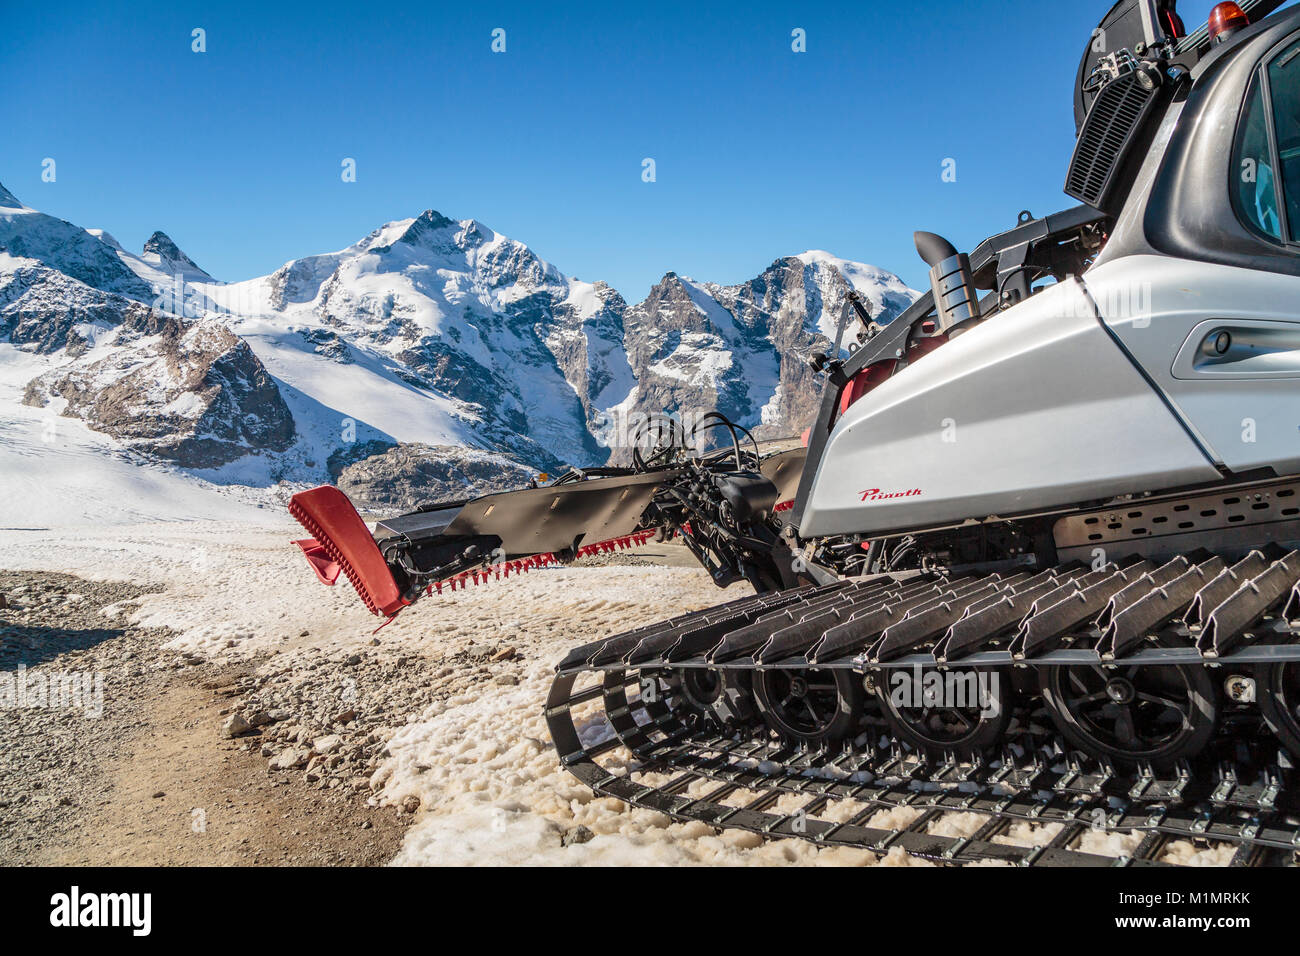 Une piste de ski dans la dameuse à Bernina des pics de montagne et le glacier de Diavolezza, près de Saint-Moritz, en Suisse, l'Europe. Banque D'Images